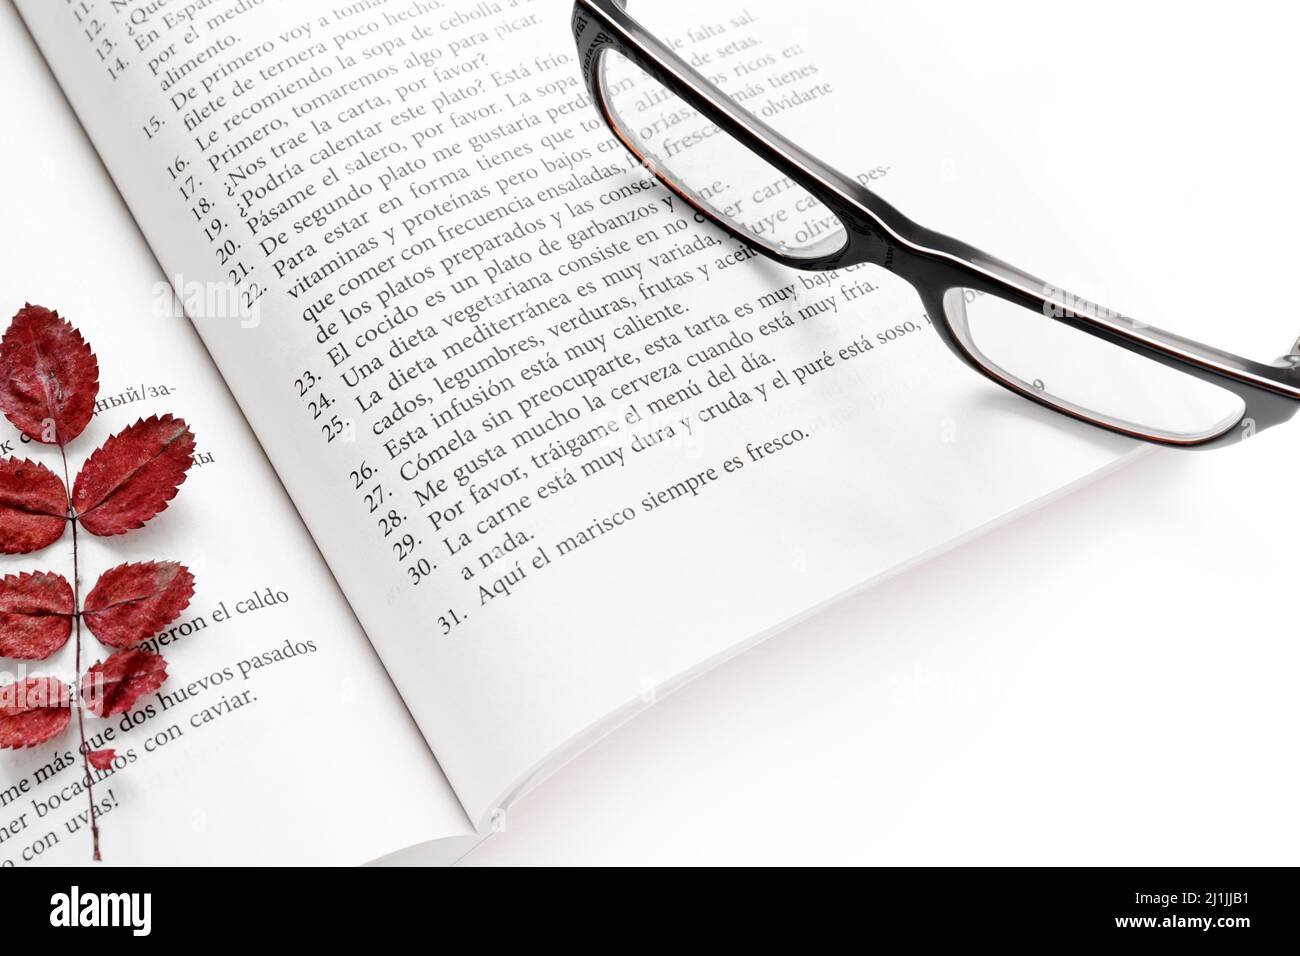 Moskau, Russland, 19. April 2019:ein offenes Spanisch-Selbsthilfe-Lehrbuch mit einem Lesezeichen aus trockenen roten Herbstblättern und schwarz umrandenen Gläsern auf der Seite Stockfoto